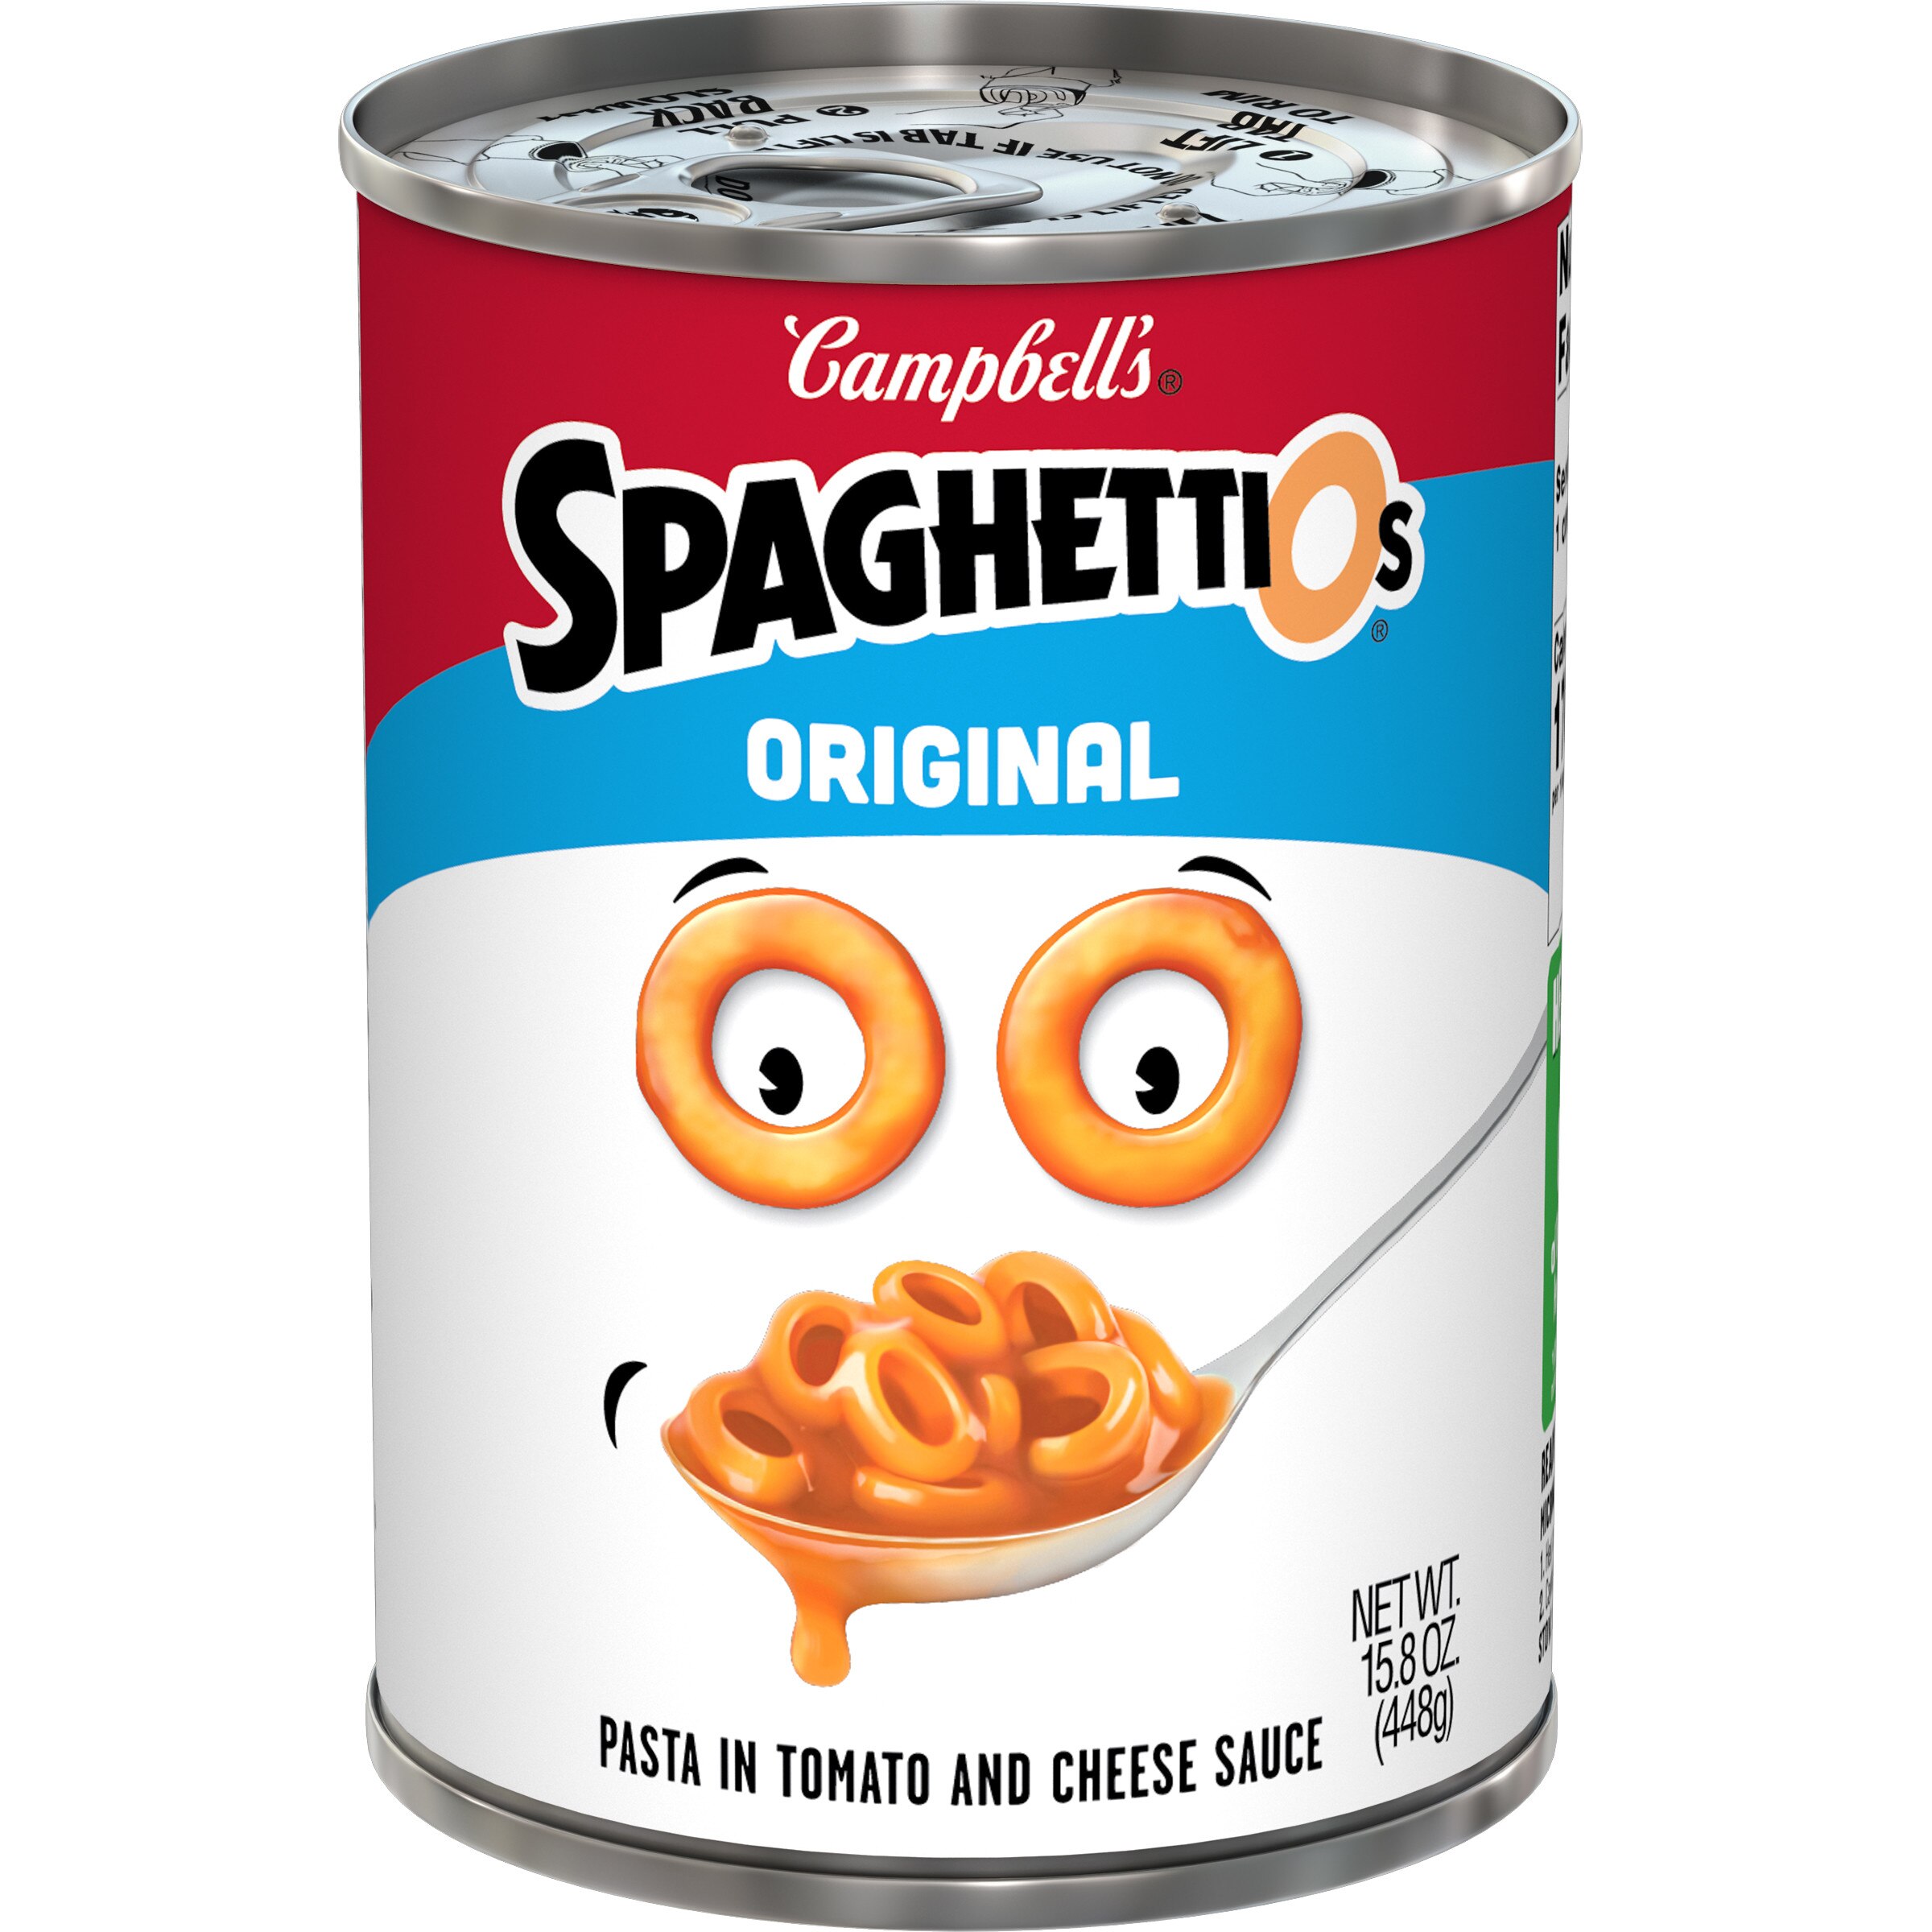  Campbell's Original Spaghetti O's 